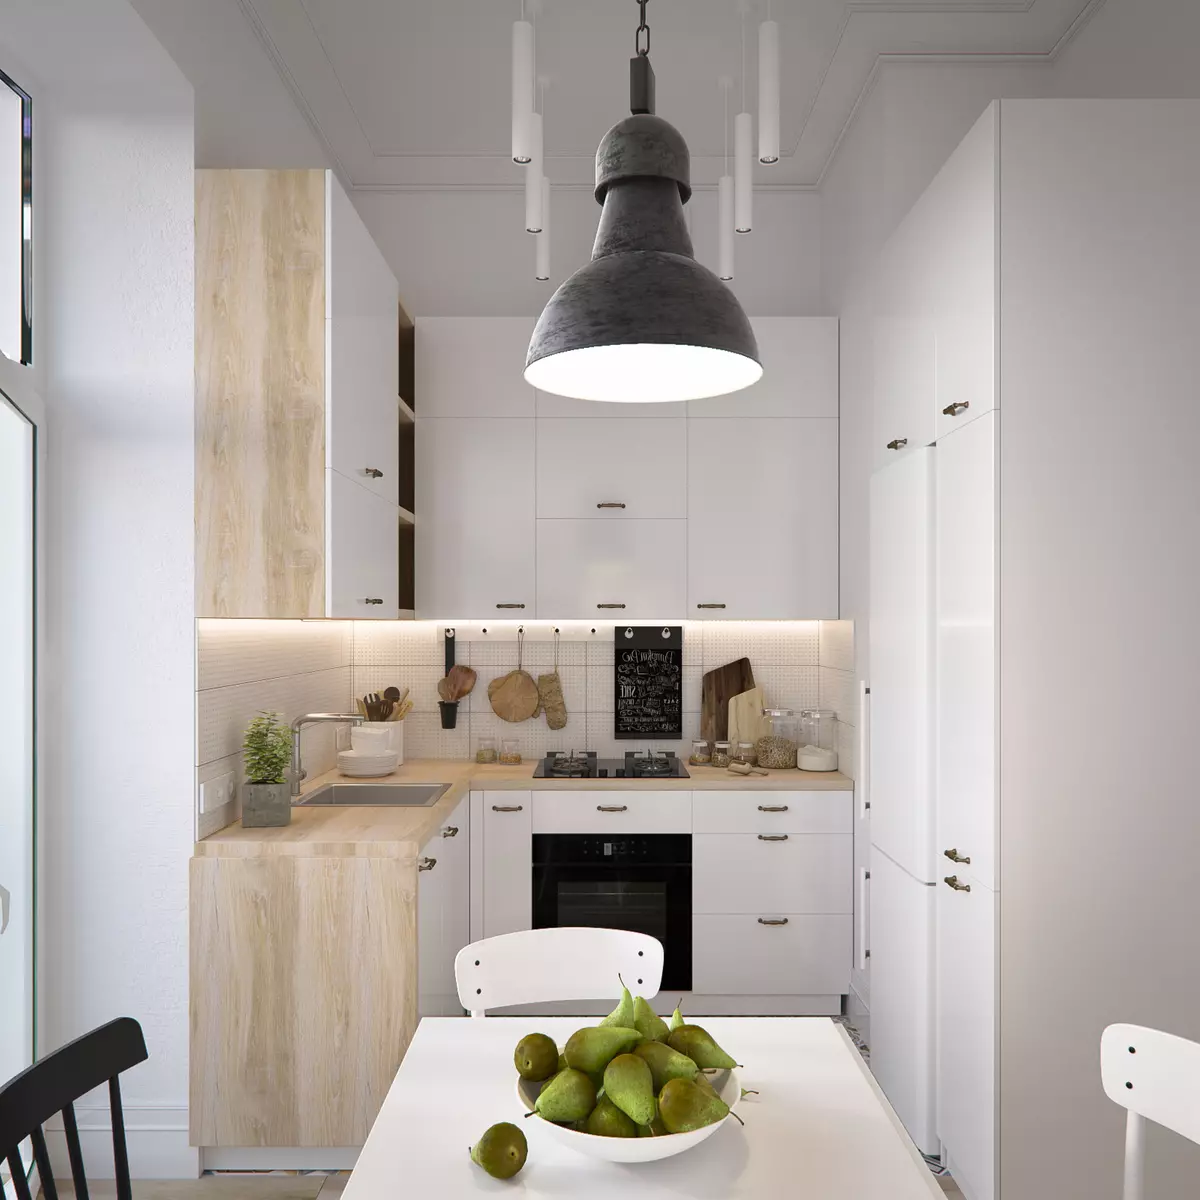 Köök Skandinaavia stiilis (116 fotot): sisekujundus köögi elutuba, valge ja hall värvid väikeses ruumis, plakatid ja kardinad, tapeet ja köögis asuvad köögis 21087_94